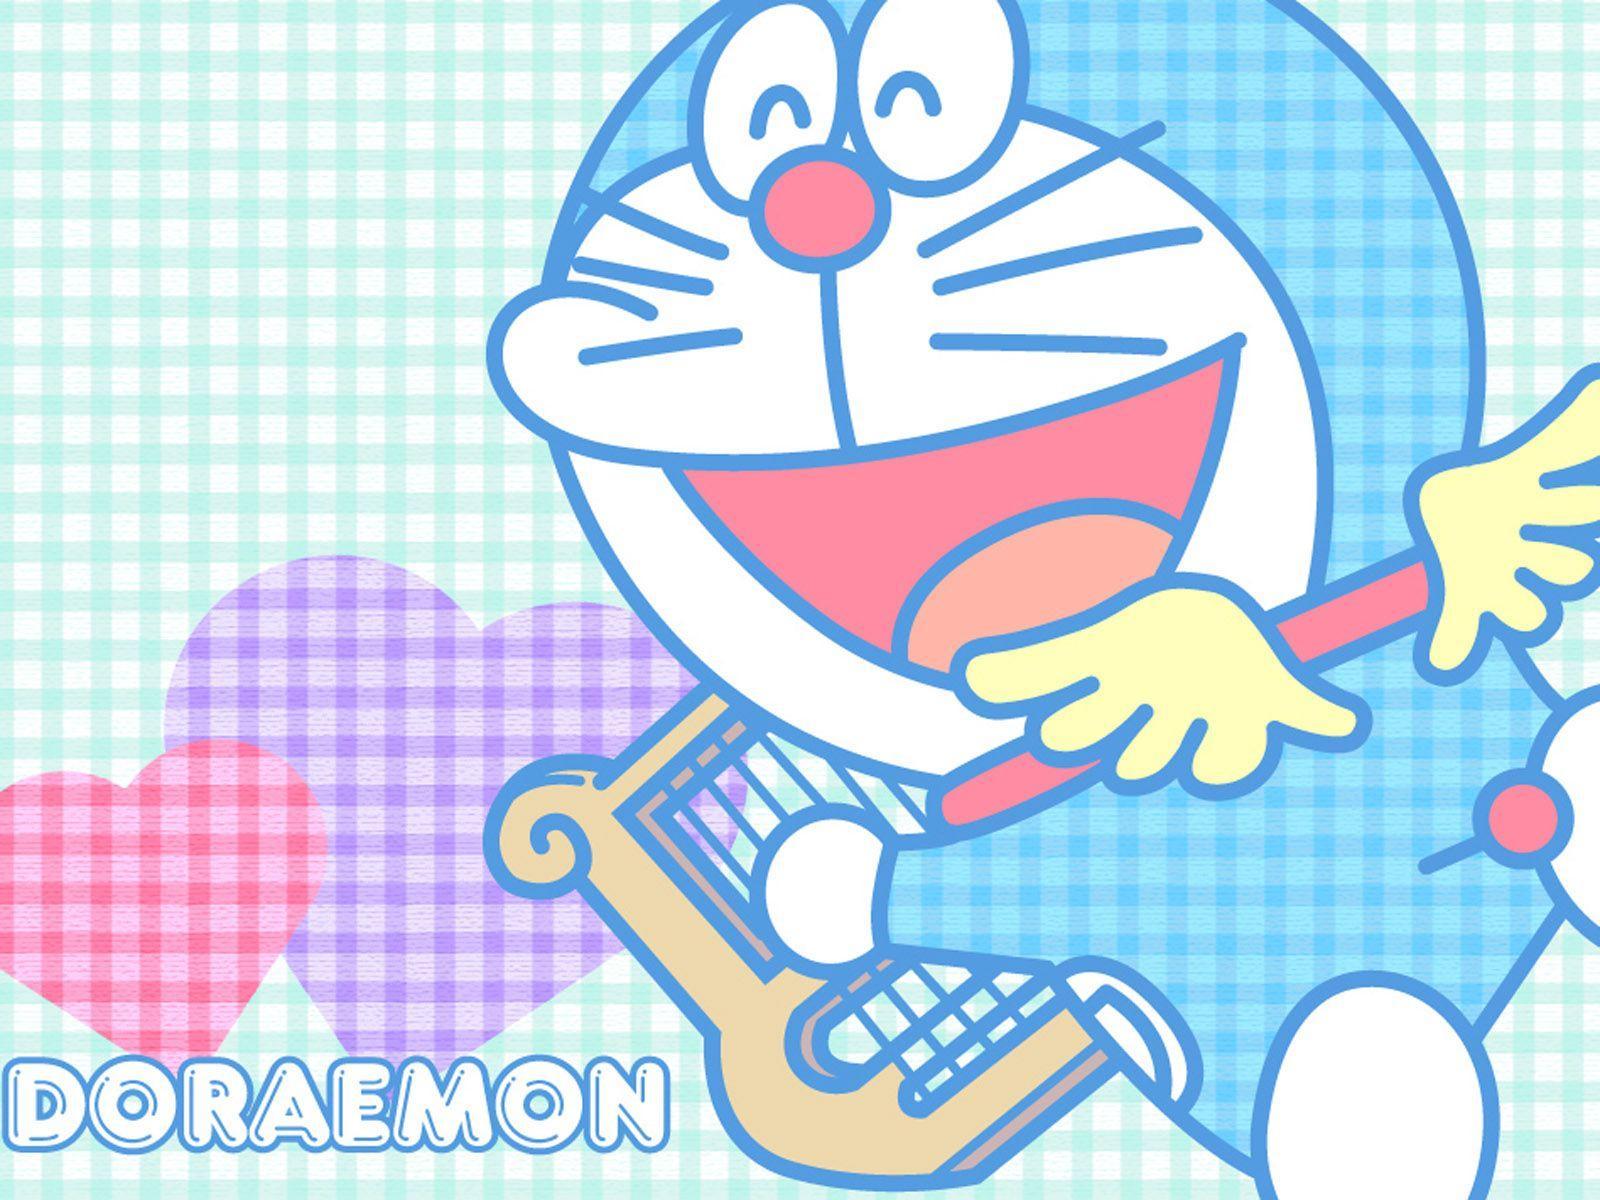 Doraemon Wallpapers For Free